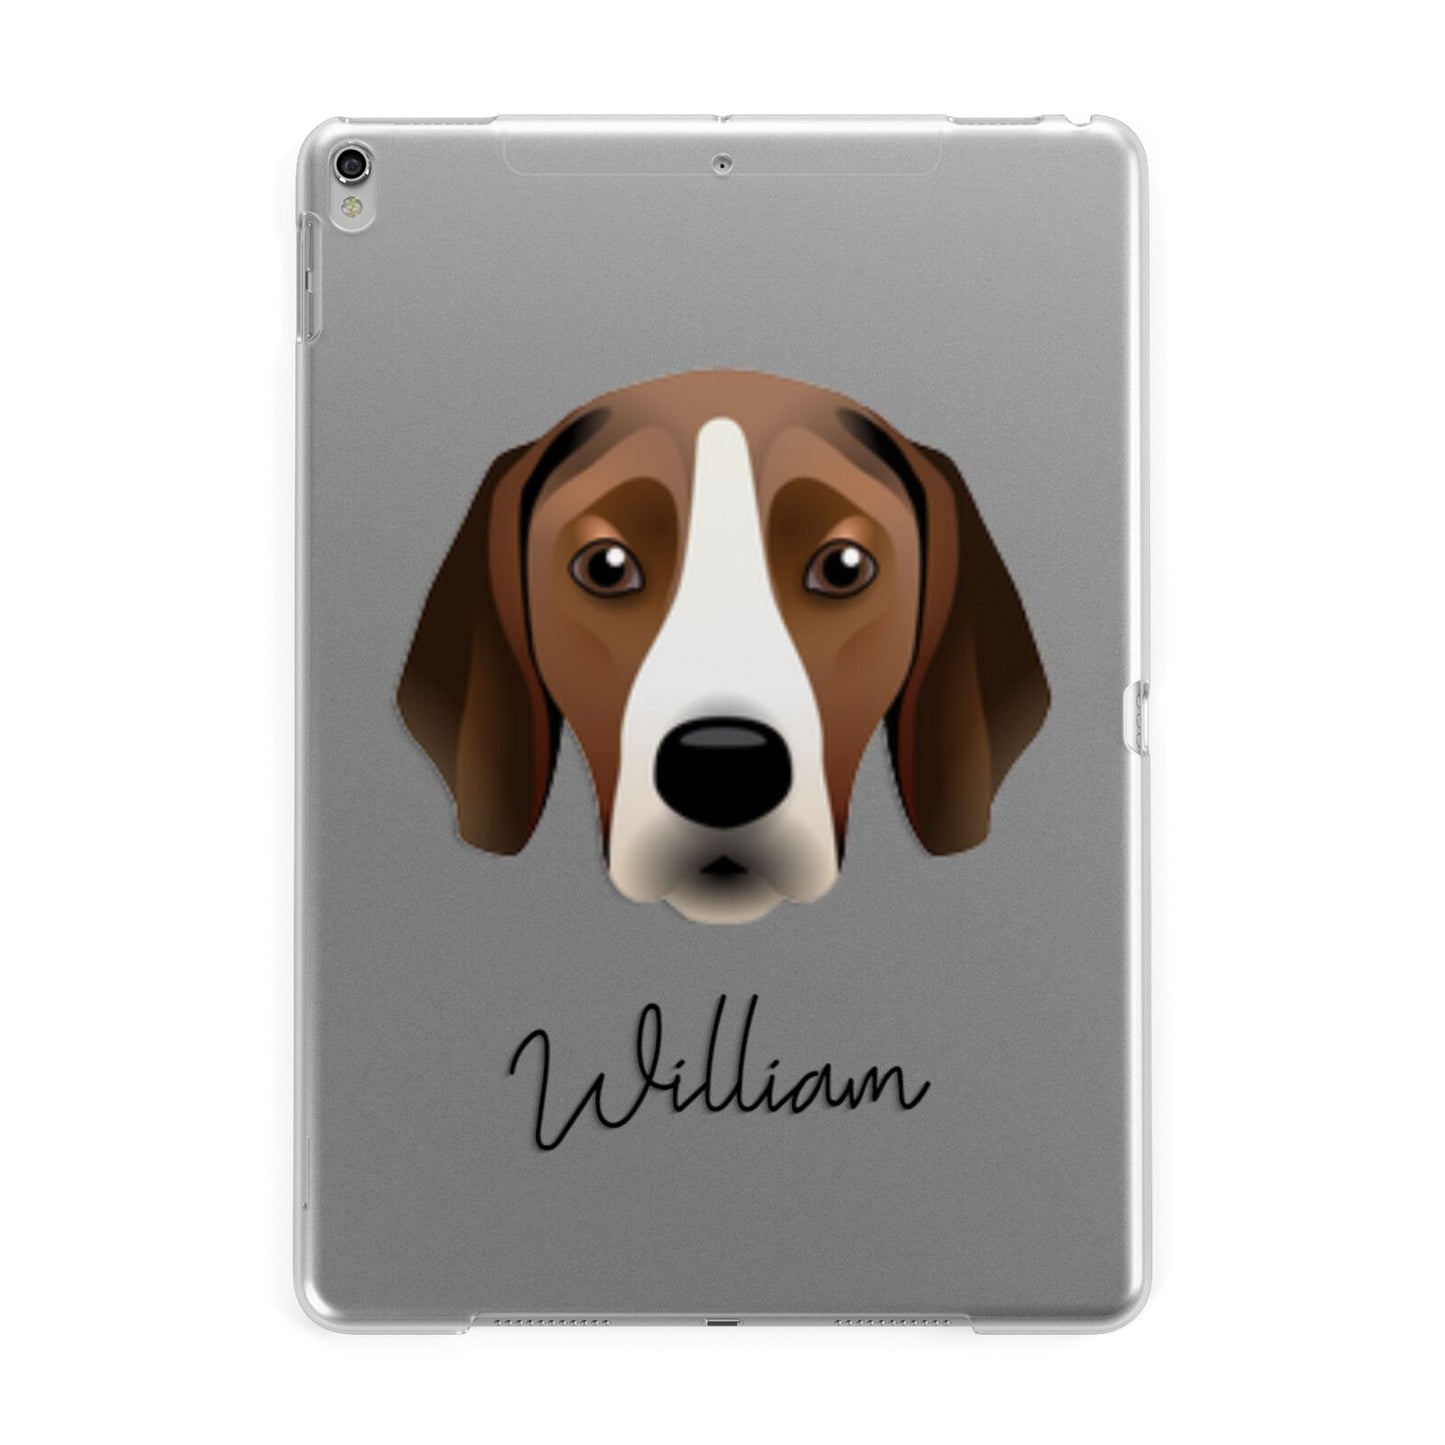 Hamiltonstovare Personalised Apple iPad Silver Case